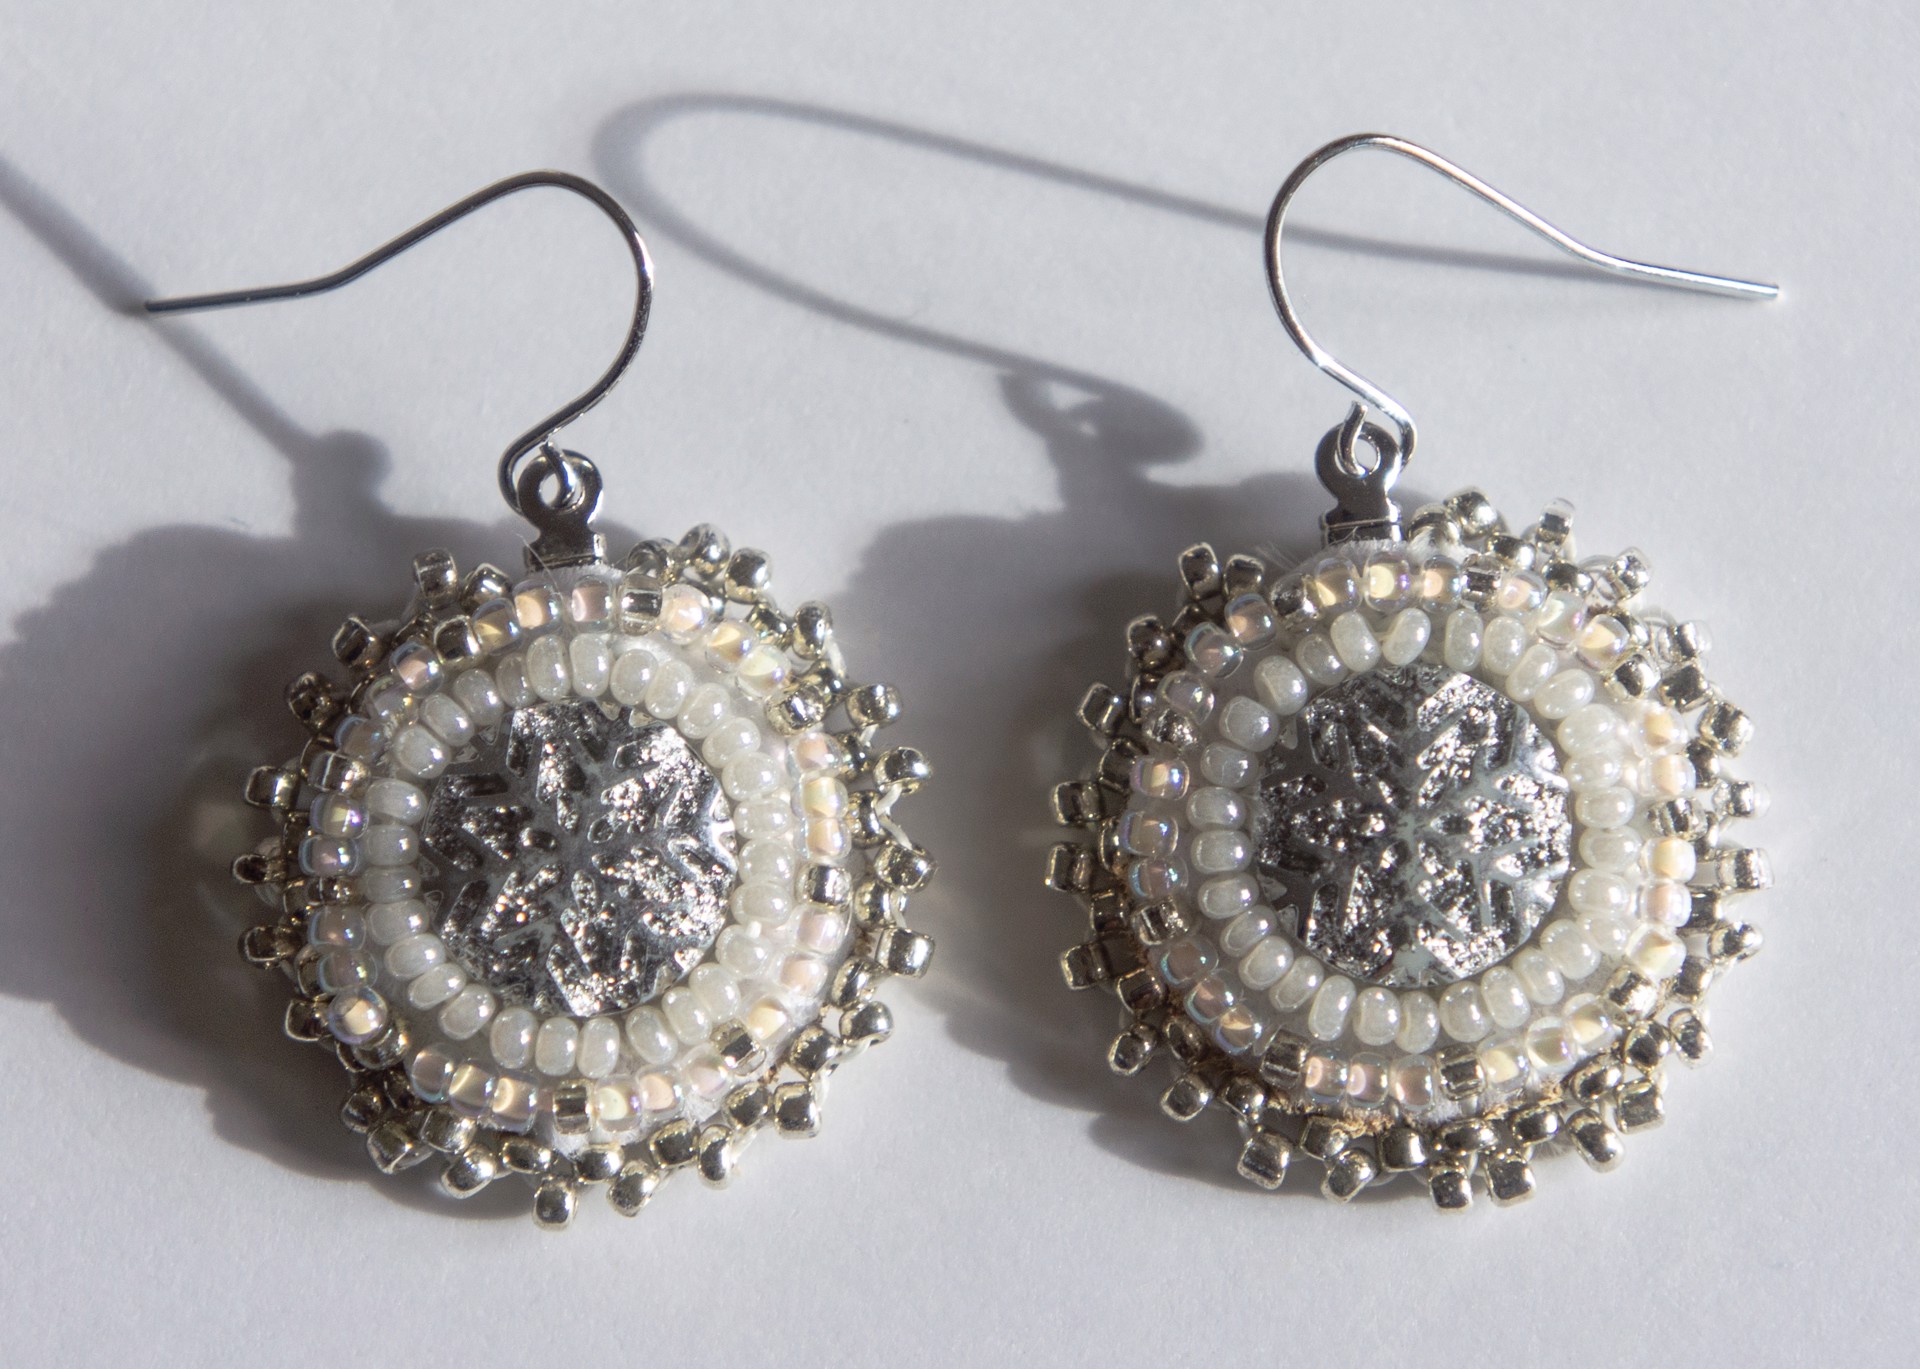 Silver Small Snowflake Earrings by Hattie Lee Mendoza